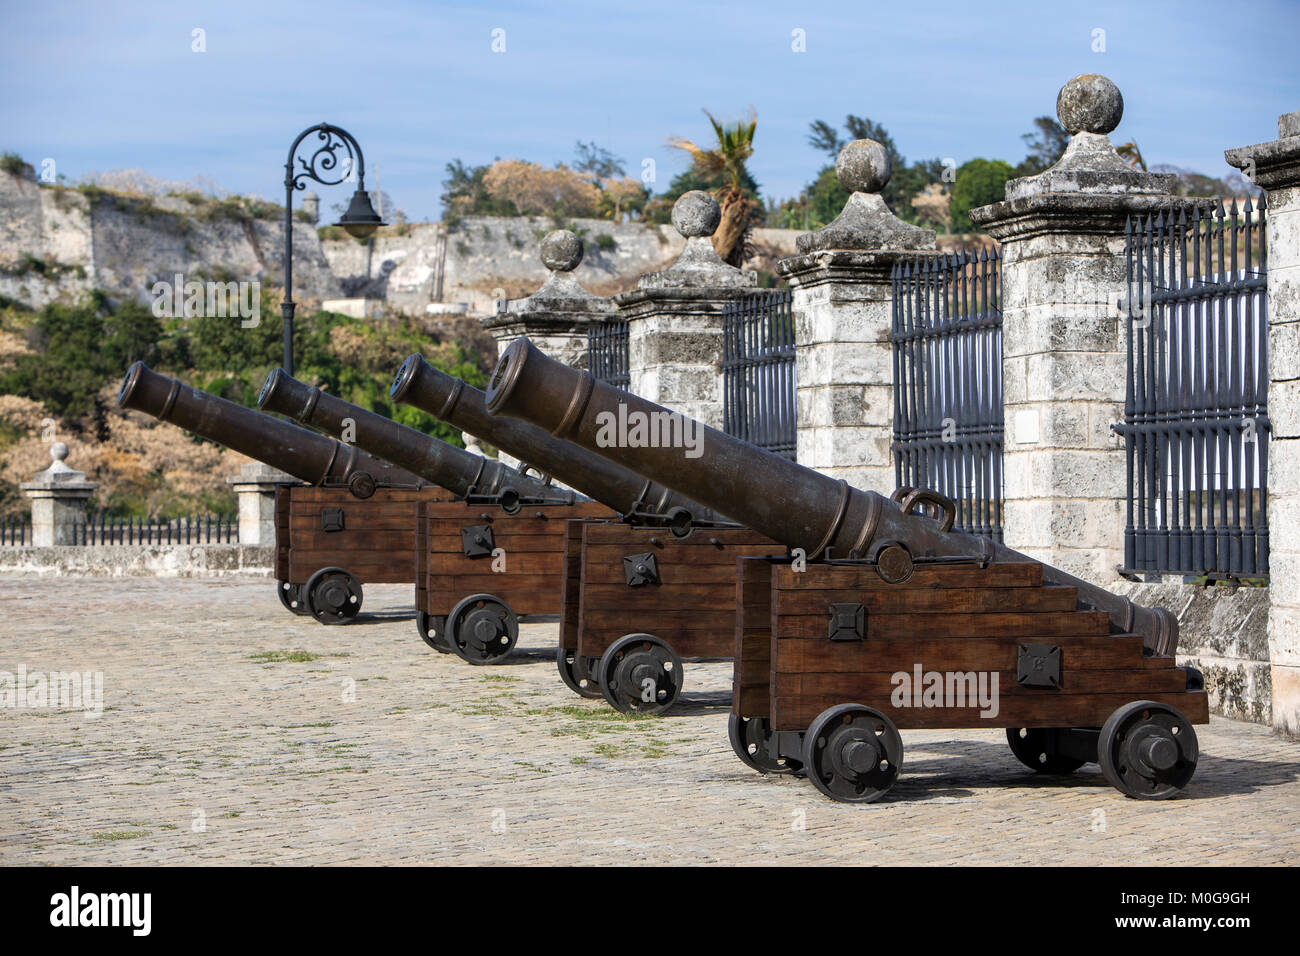 Canons à la château de la Force royale de La Havane, Cuba Banque D'Images